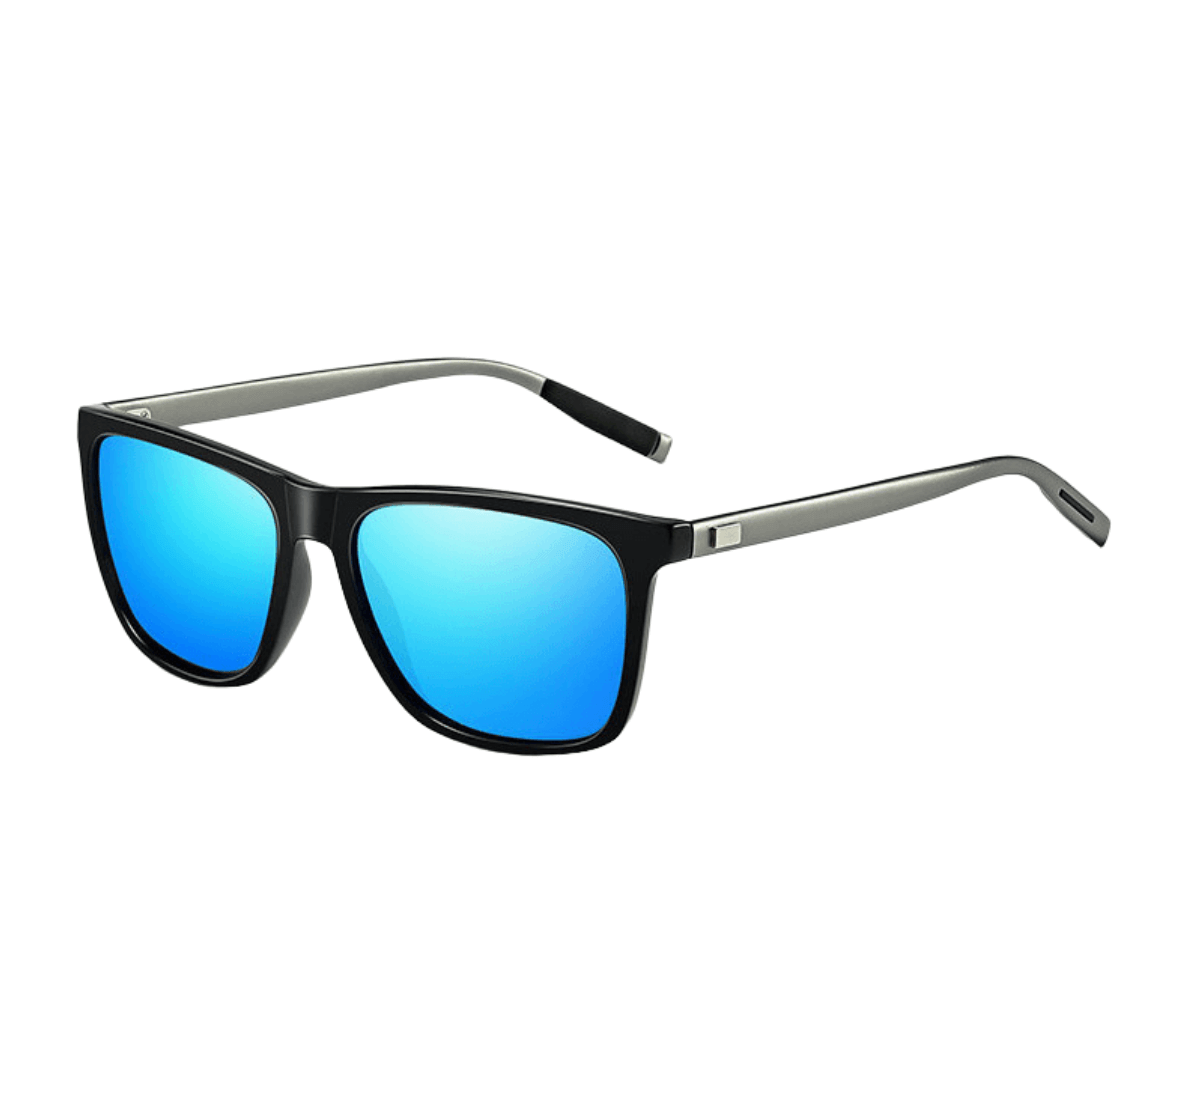 Custom Polarized Sunglasses, fashion square sunglasses blue lens, custom logo polarized sunglasses, polarized sunglasses suppliers, eyeglasses factory